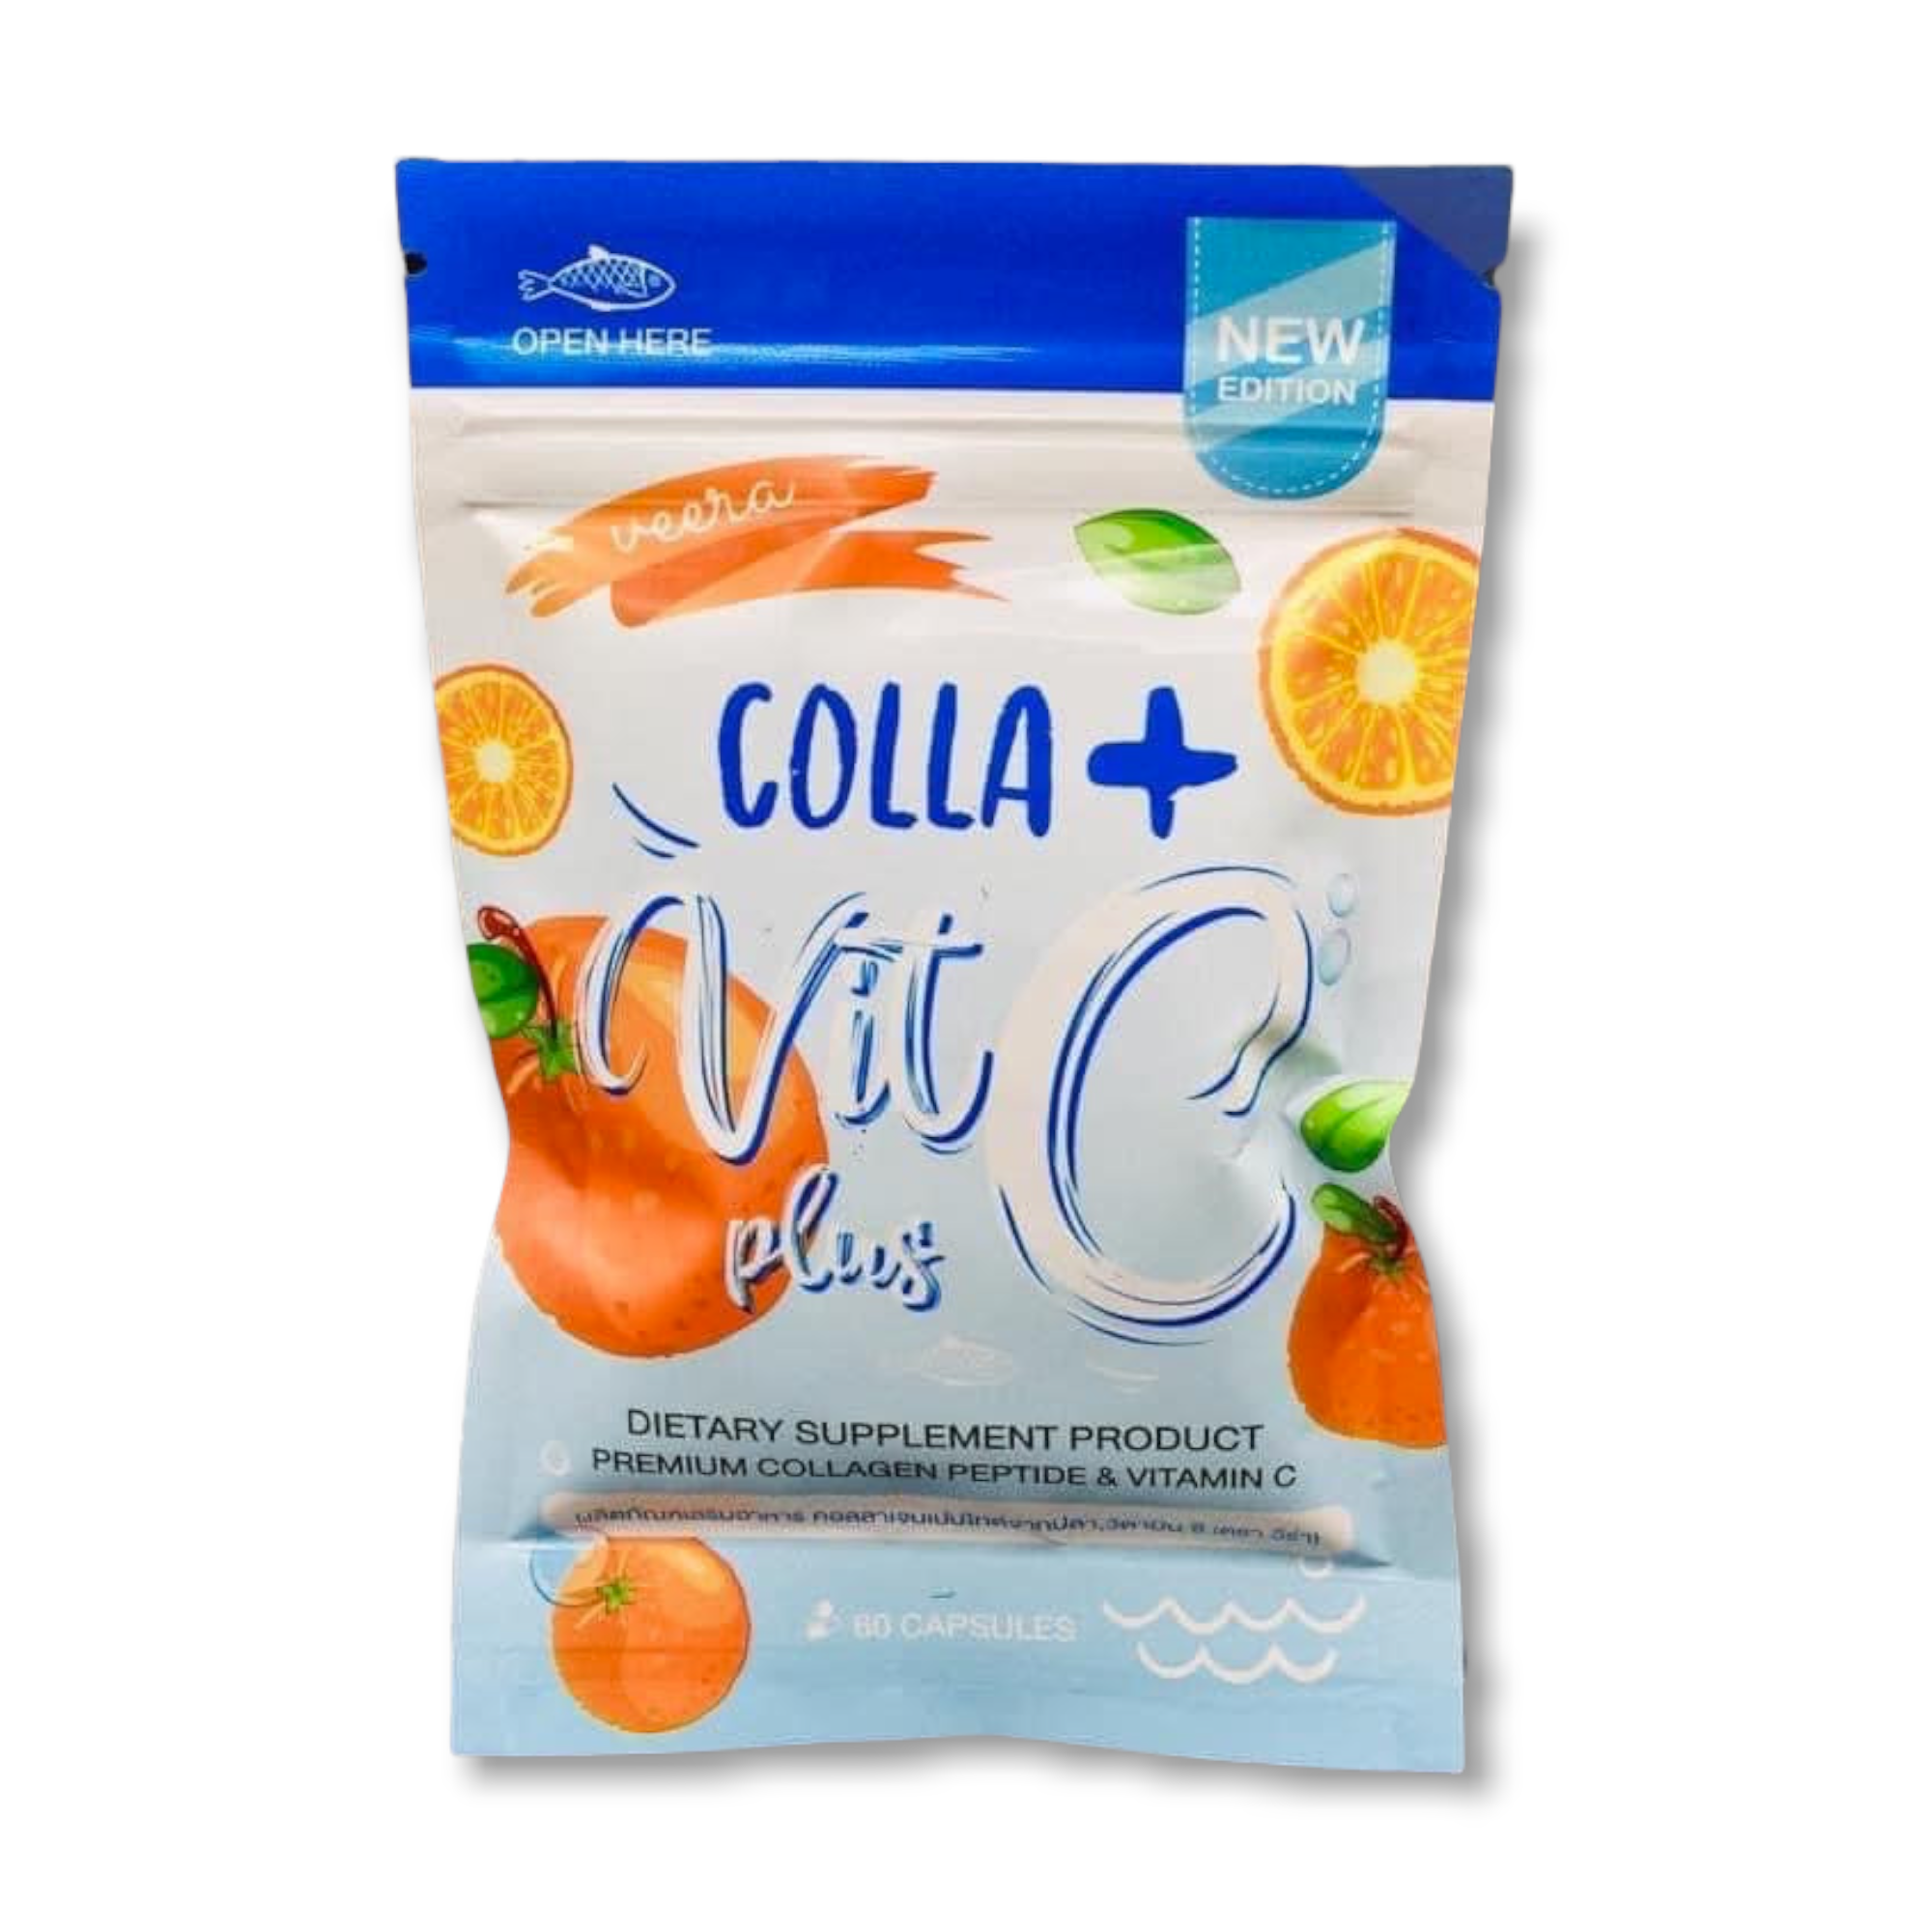 Veera Colla + Vitamin C plus from Thailand